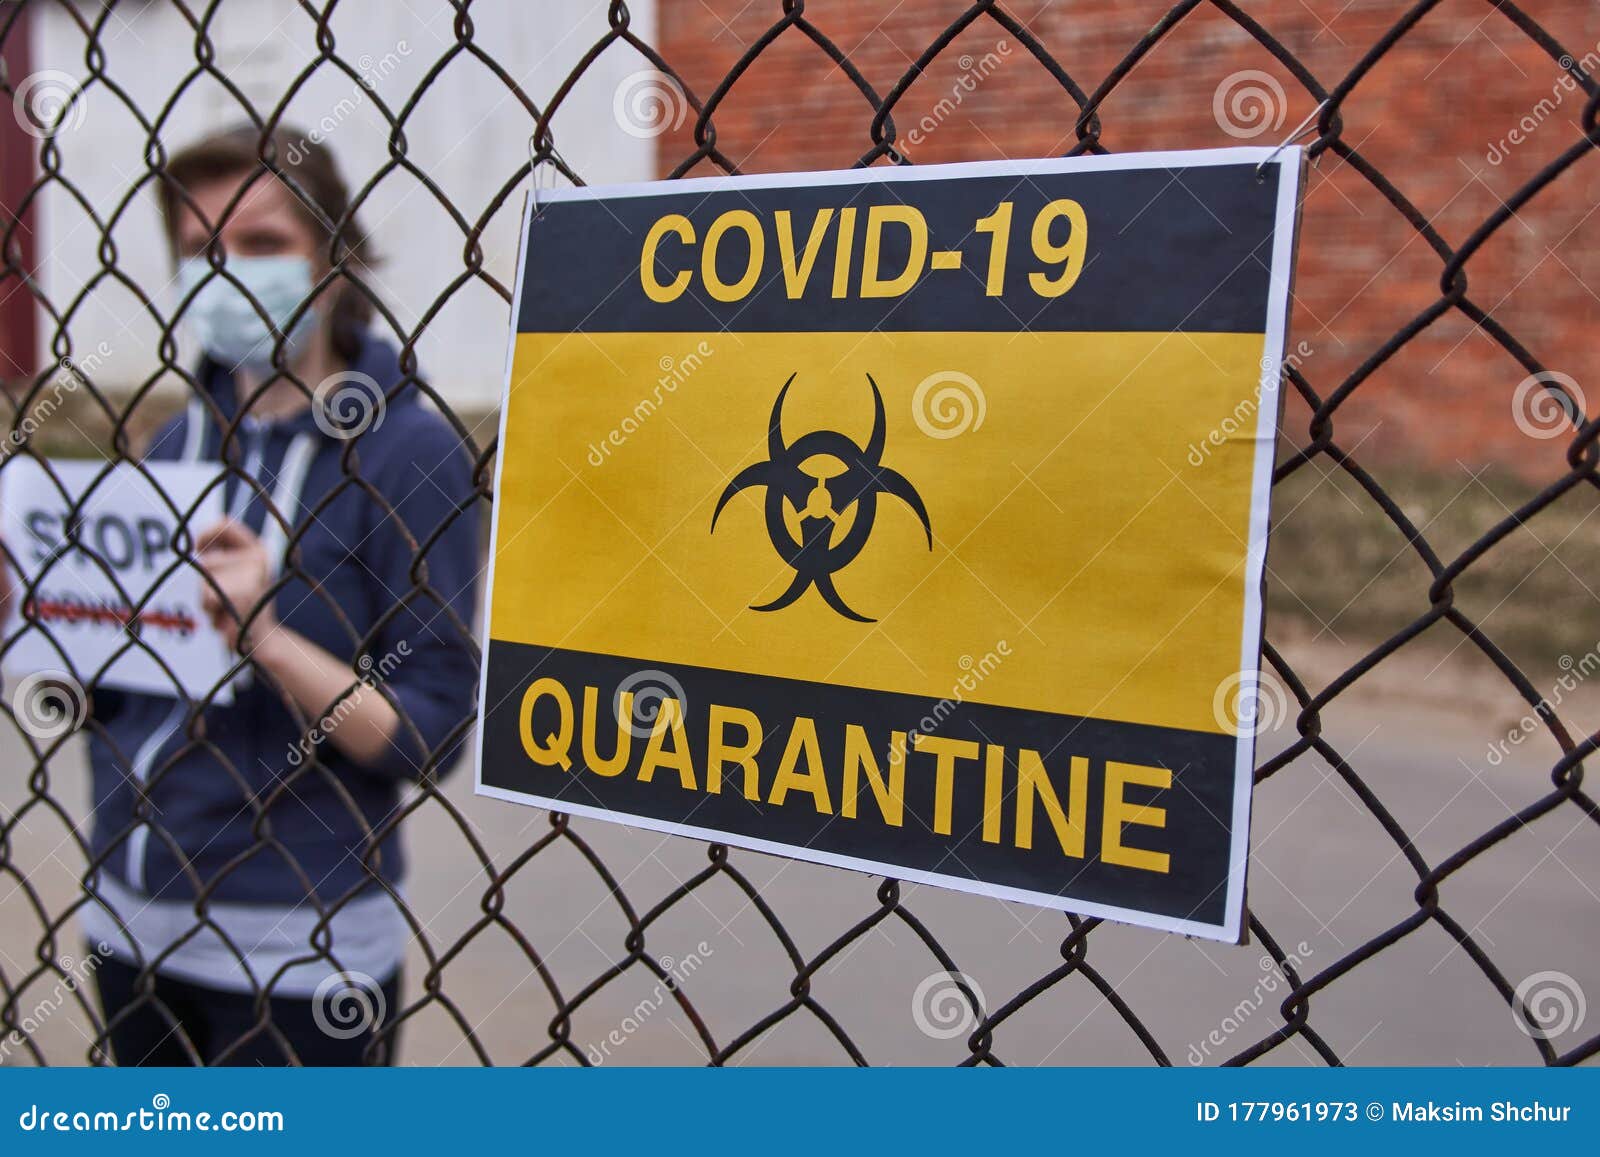 quarantine activities